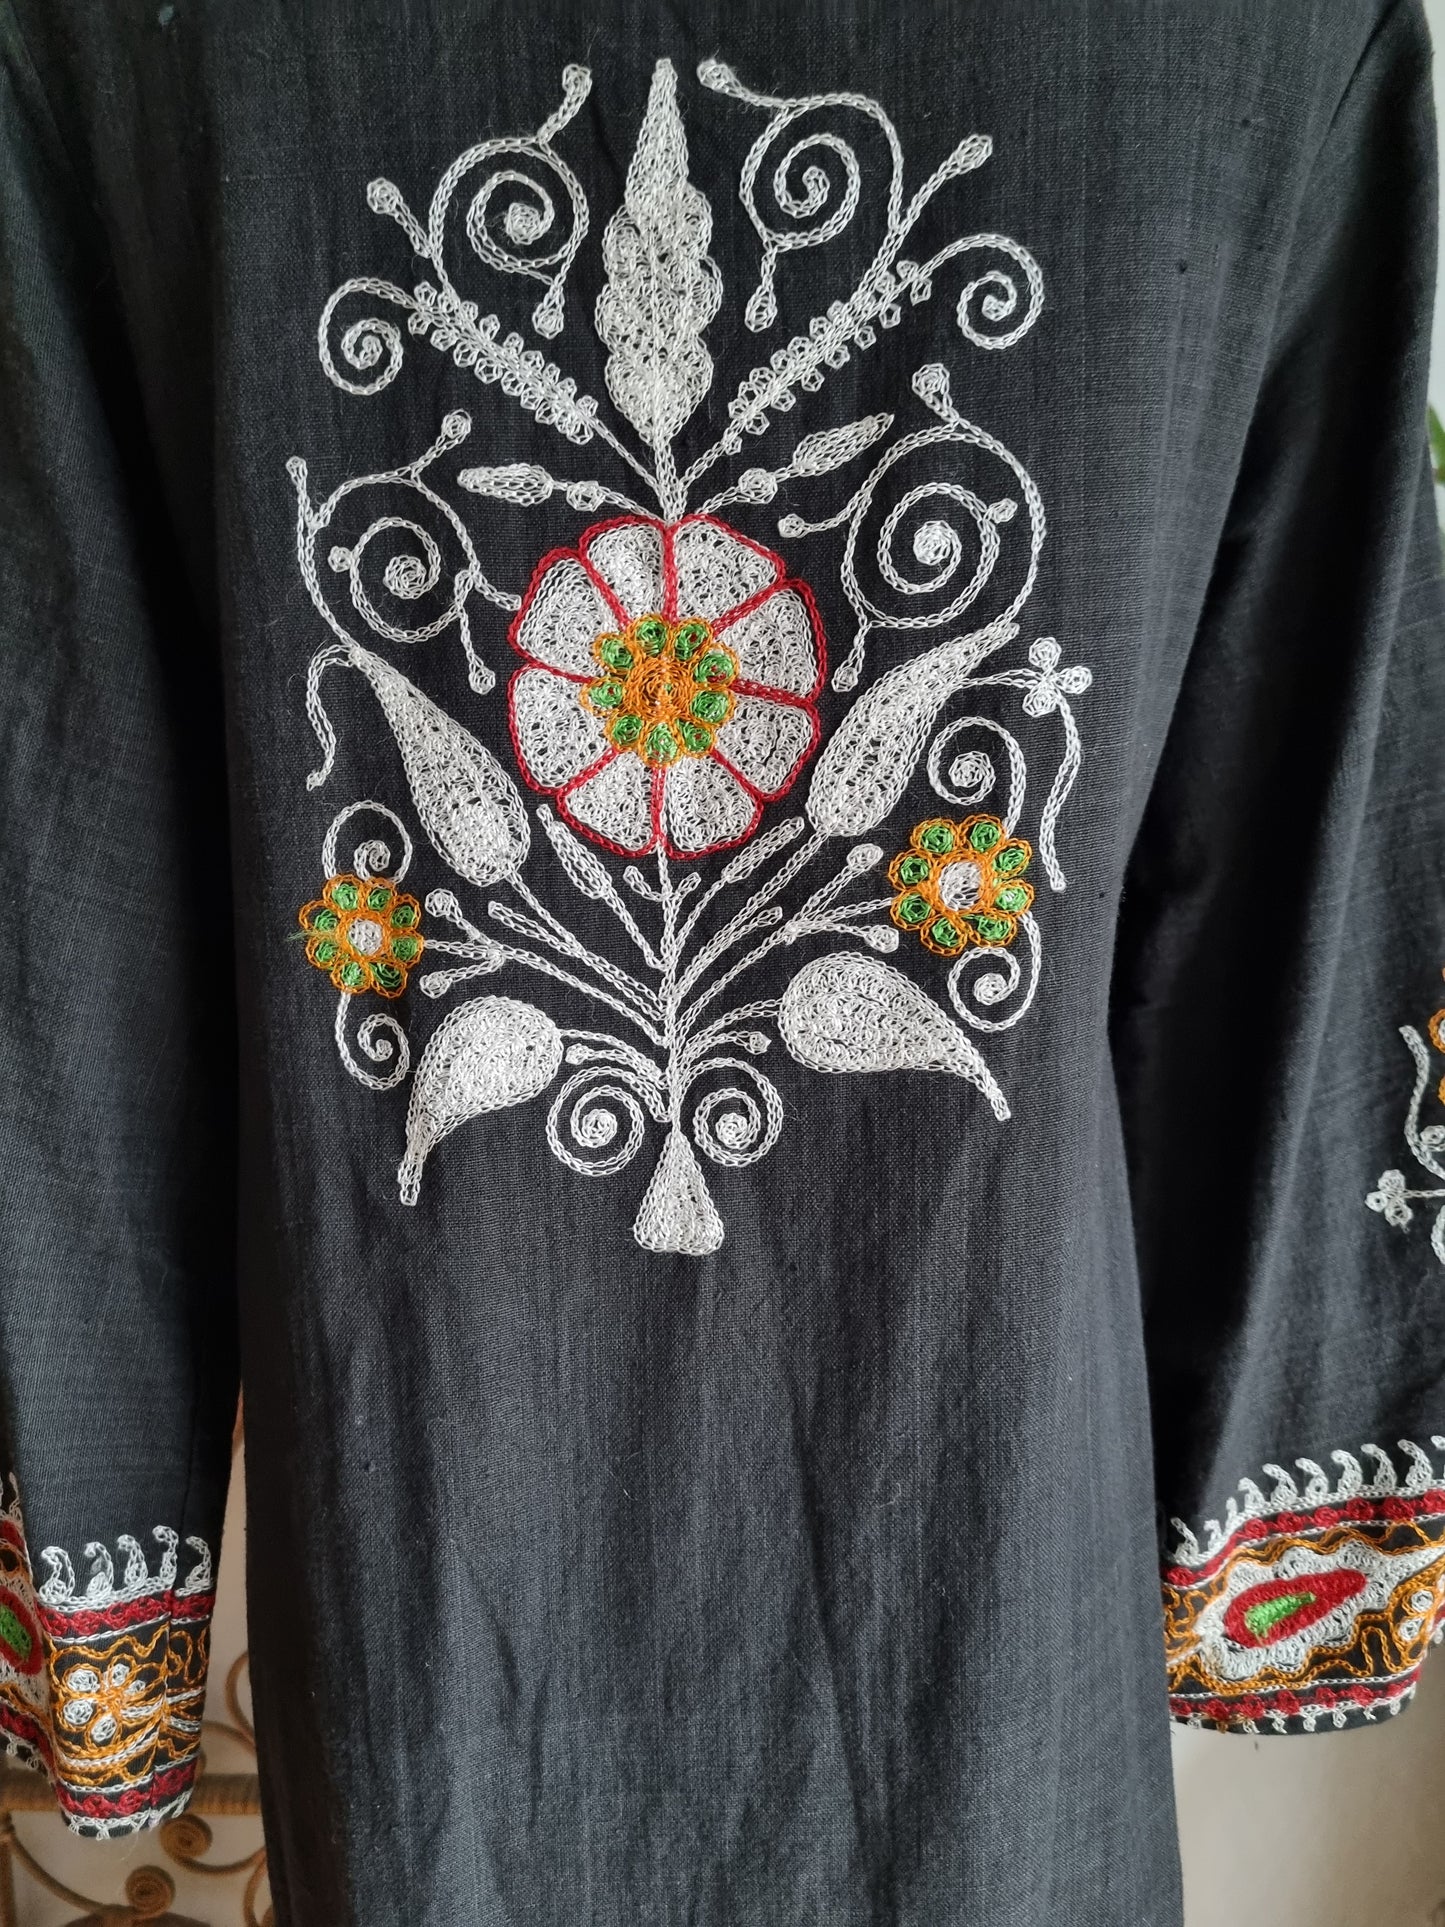 Vintage embroidered Souk Indian 70s kaftan dress